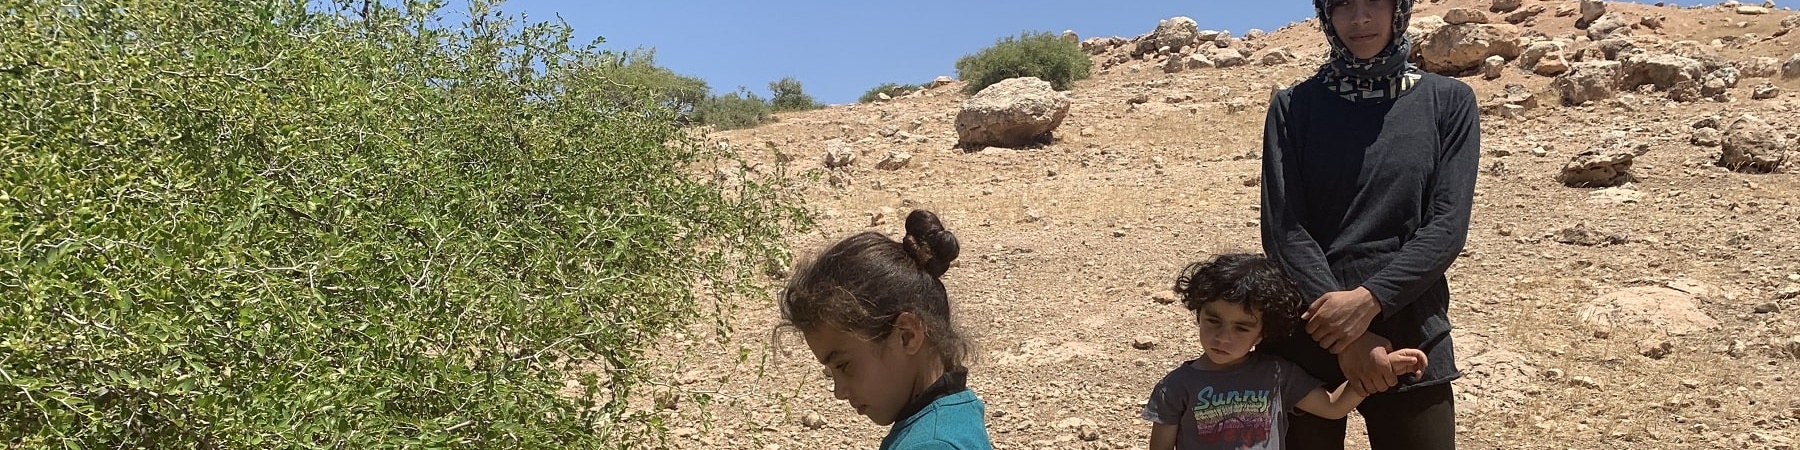 bambine palestinesi nel territorio occupato palestinese